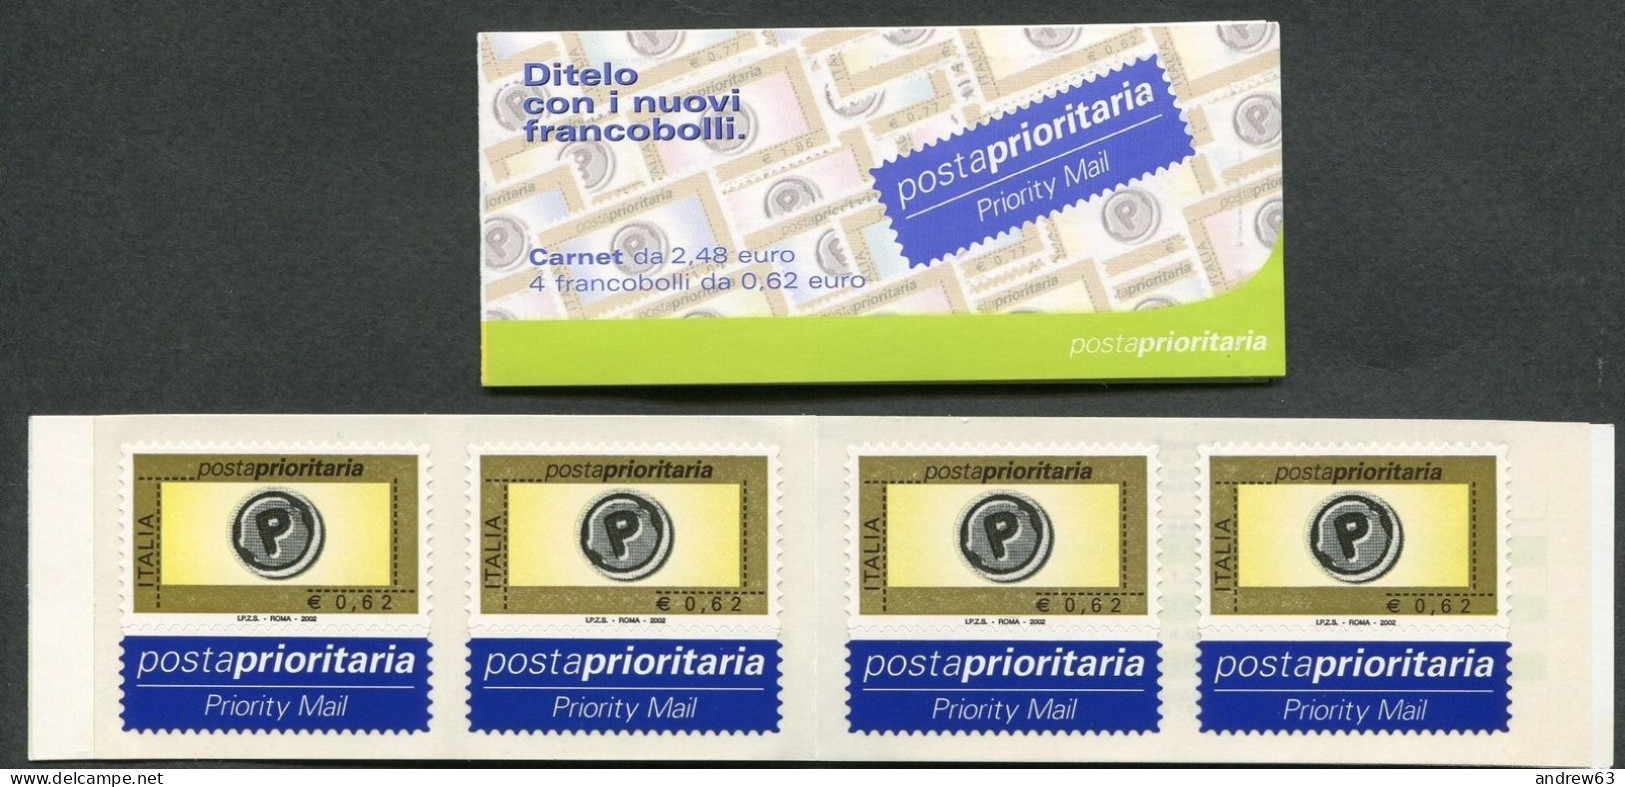 ITALIA - 2002 - Libretto Posta Prioritaria Carnet Da 4 Francobolli Di € 0,62 Integri - Nuovo - Libretti